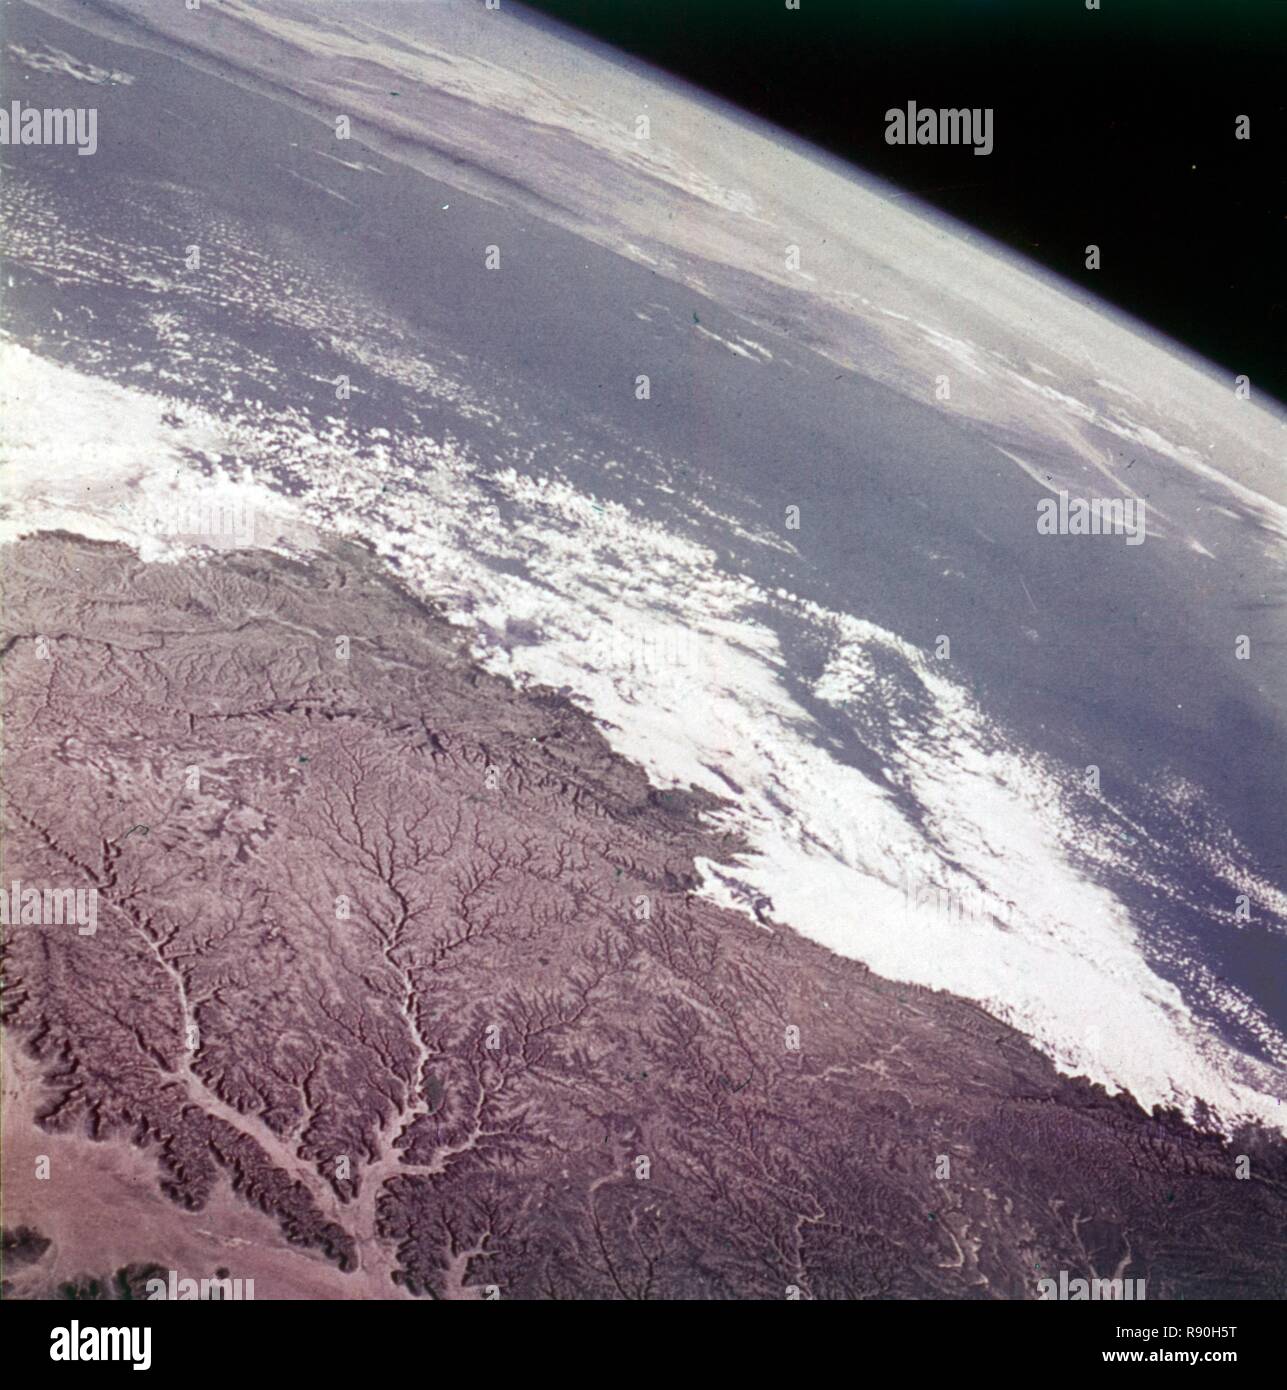 La tierra desde el espacio - el Sudán, c1980s. Creador: NASA. Foto de stock